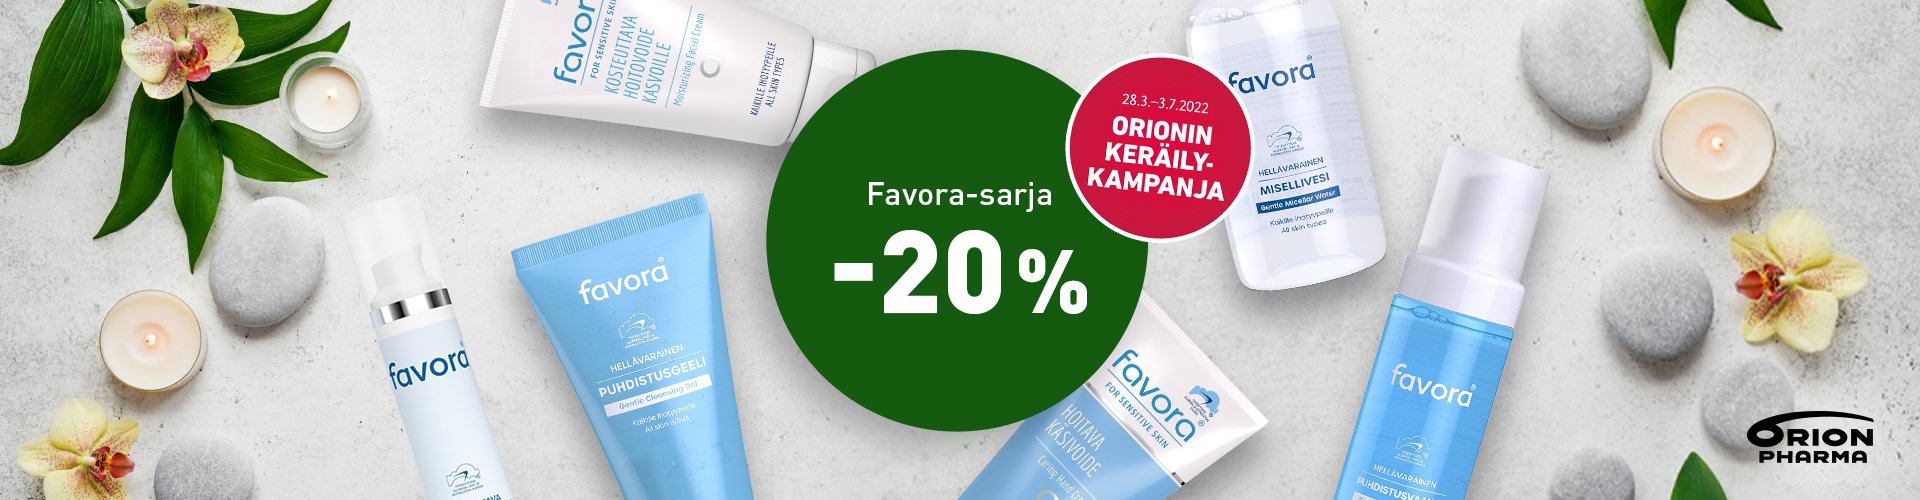 Favora -20% Orionin keräilykampanjan tuotteet edullisesti